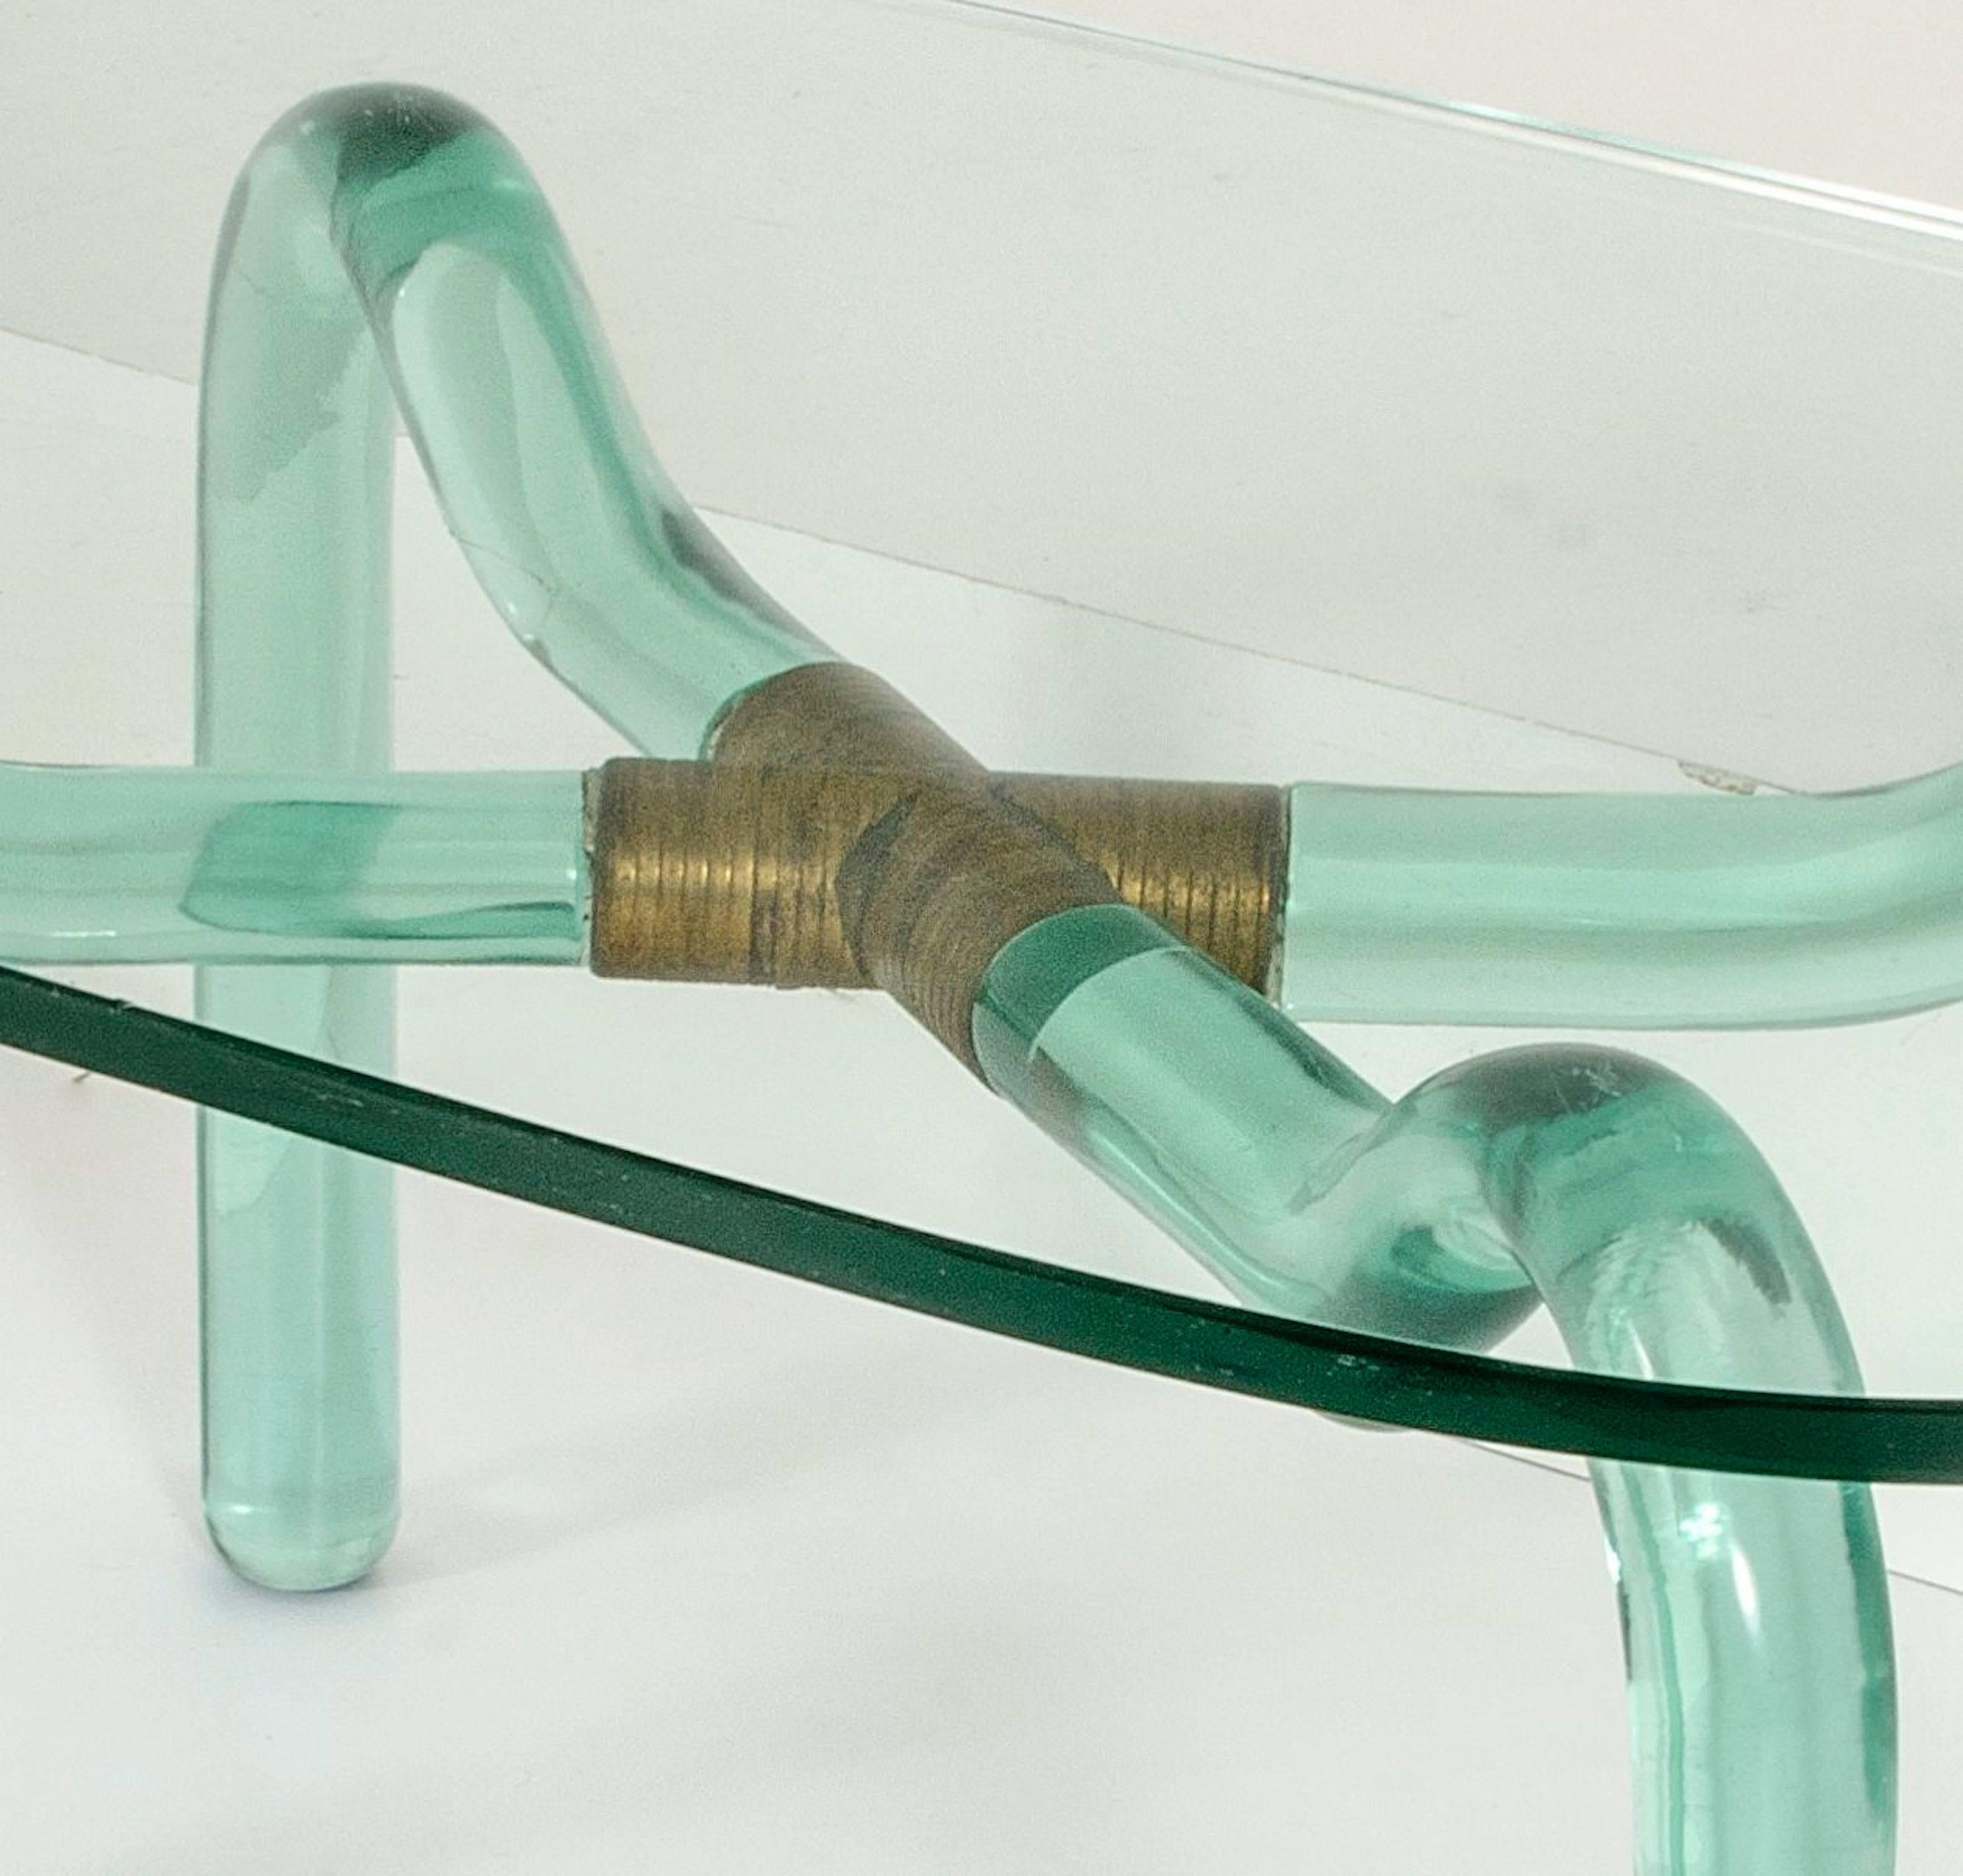 Ein Couchtisch von Seguso aus dem Jahr 1950. Schönes grünes geschliffenes Glas und Messinganschluss. Vollständig original. Ausgezeichneter Zustand.